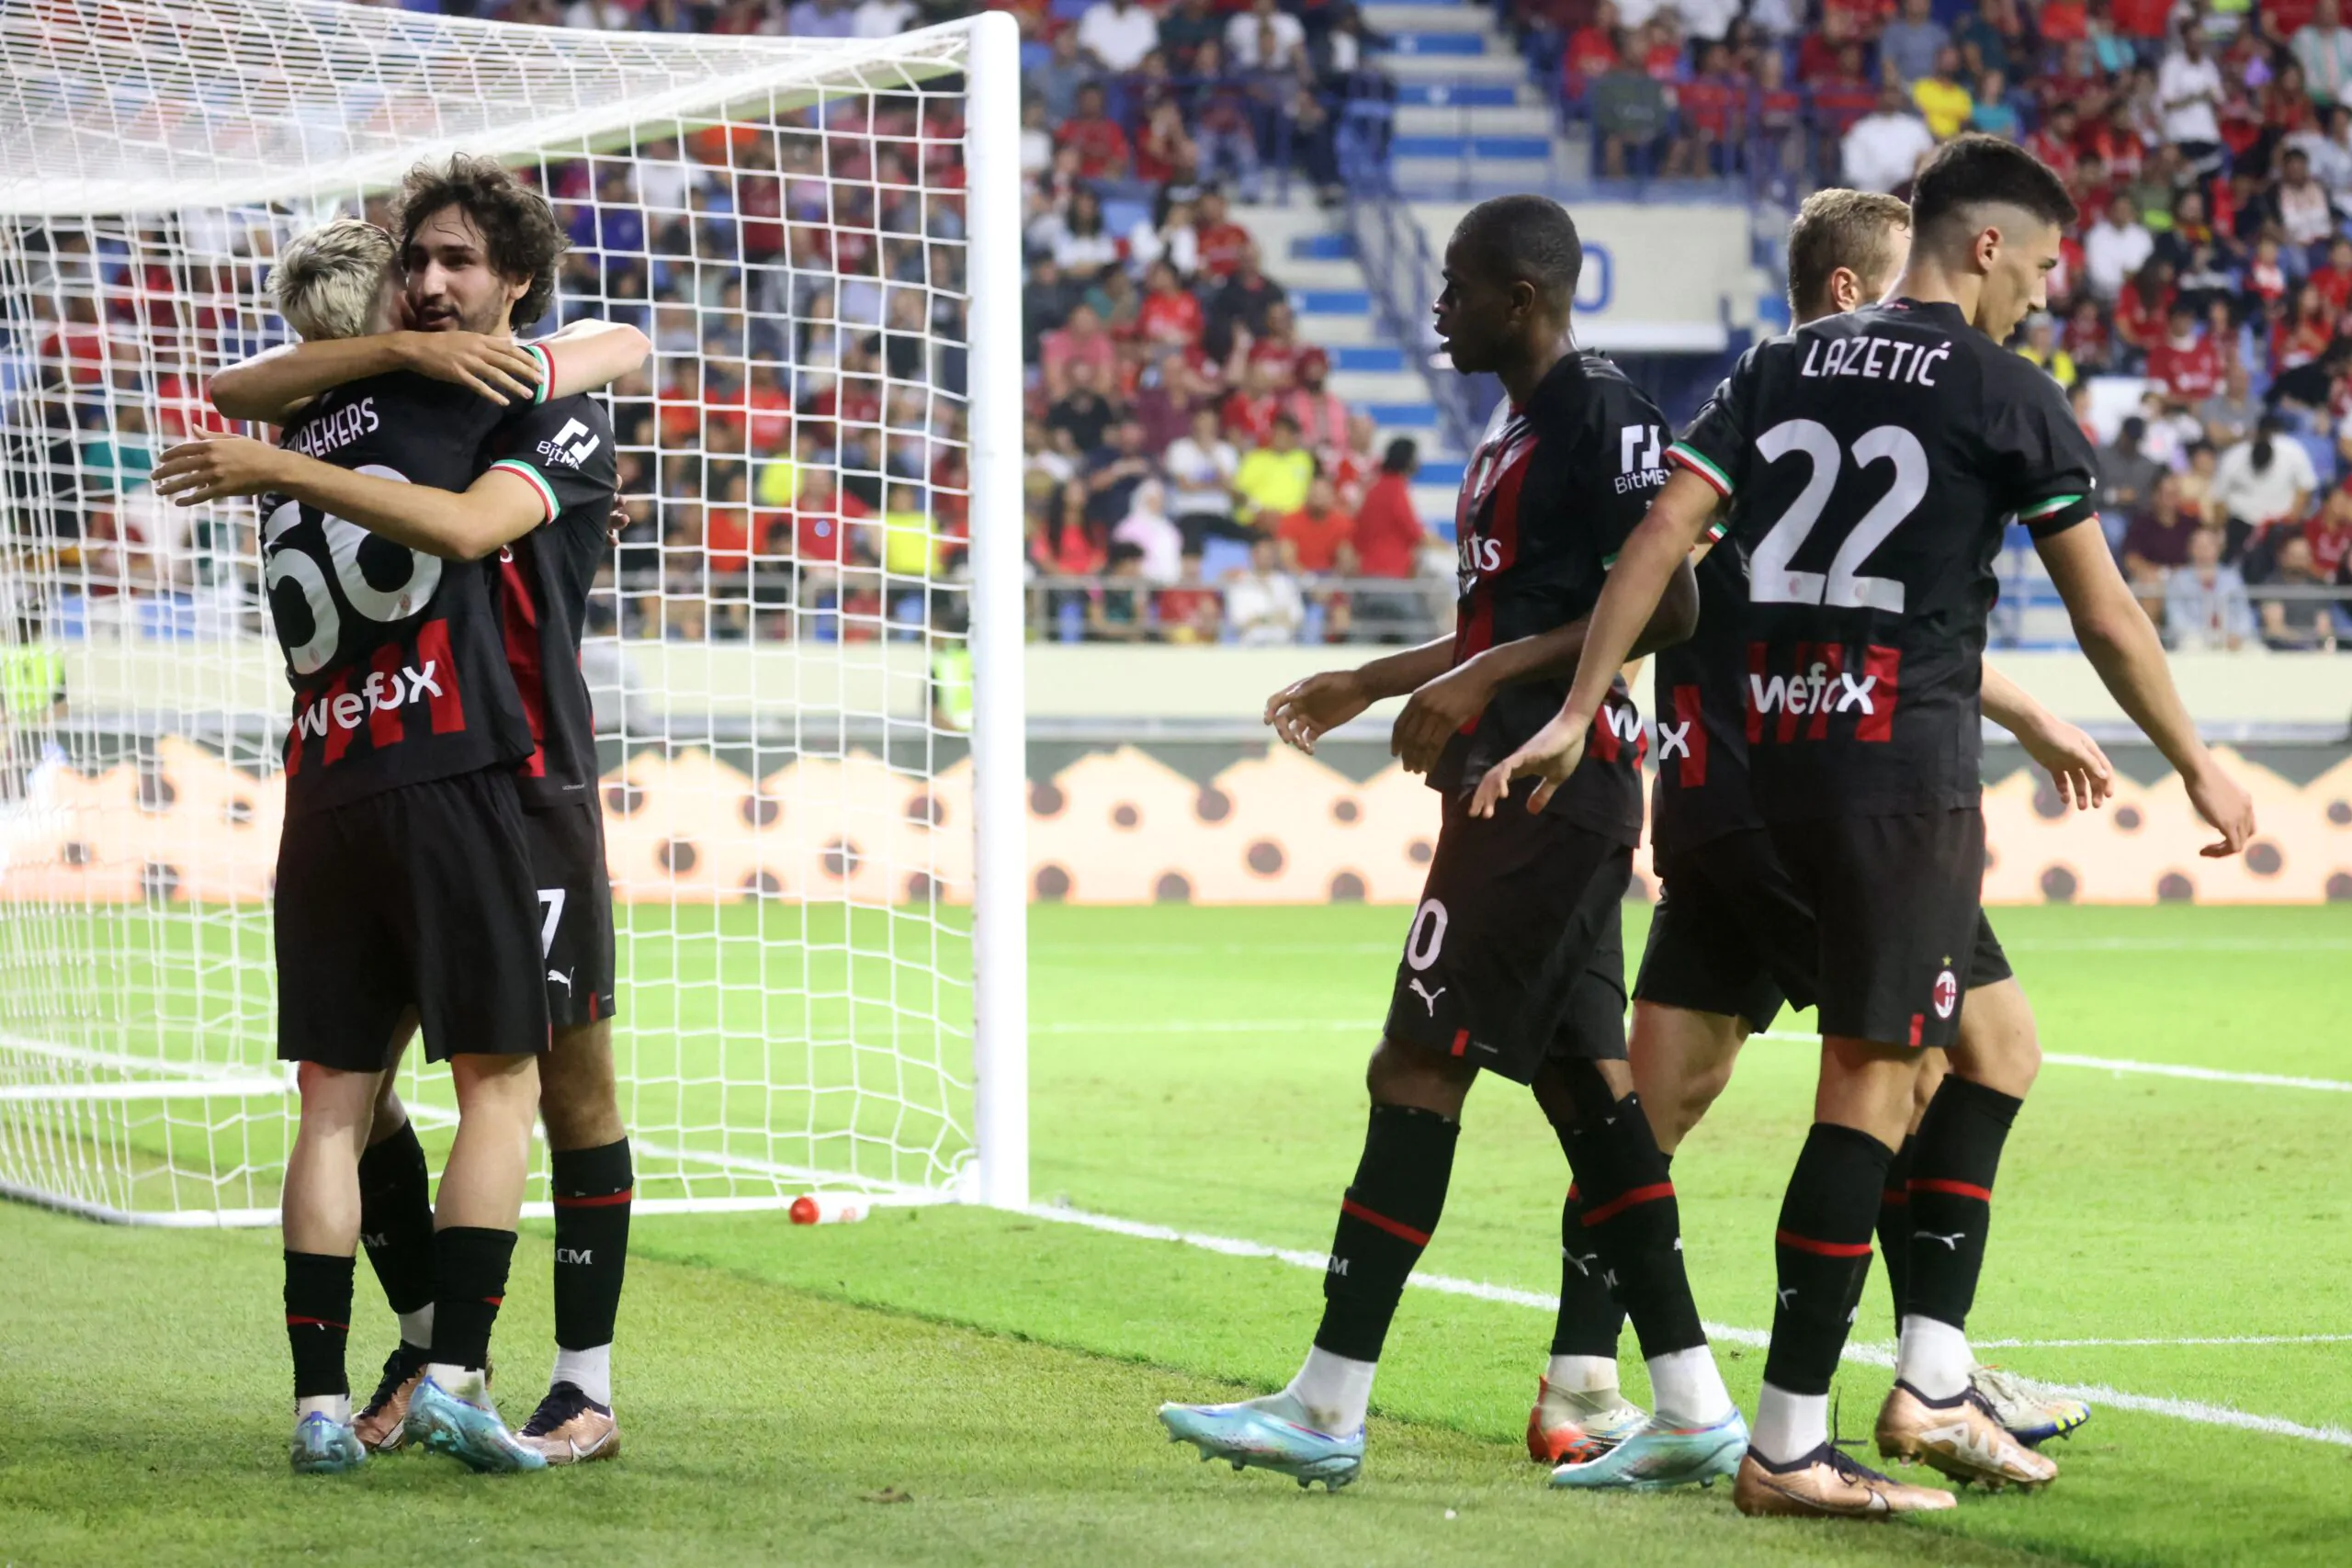 Liverpool-Milan 4-1, rossoneri sottotono: male Mirante, ottimo Saelemaekers